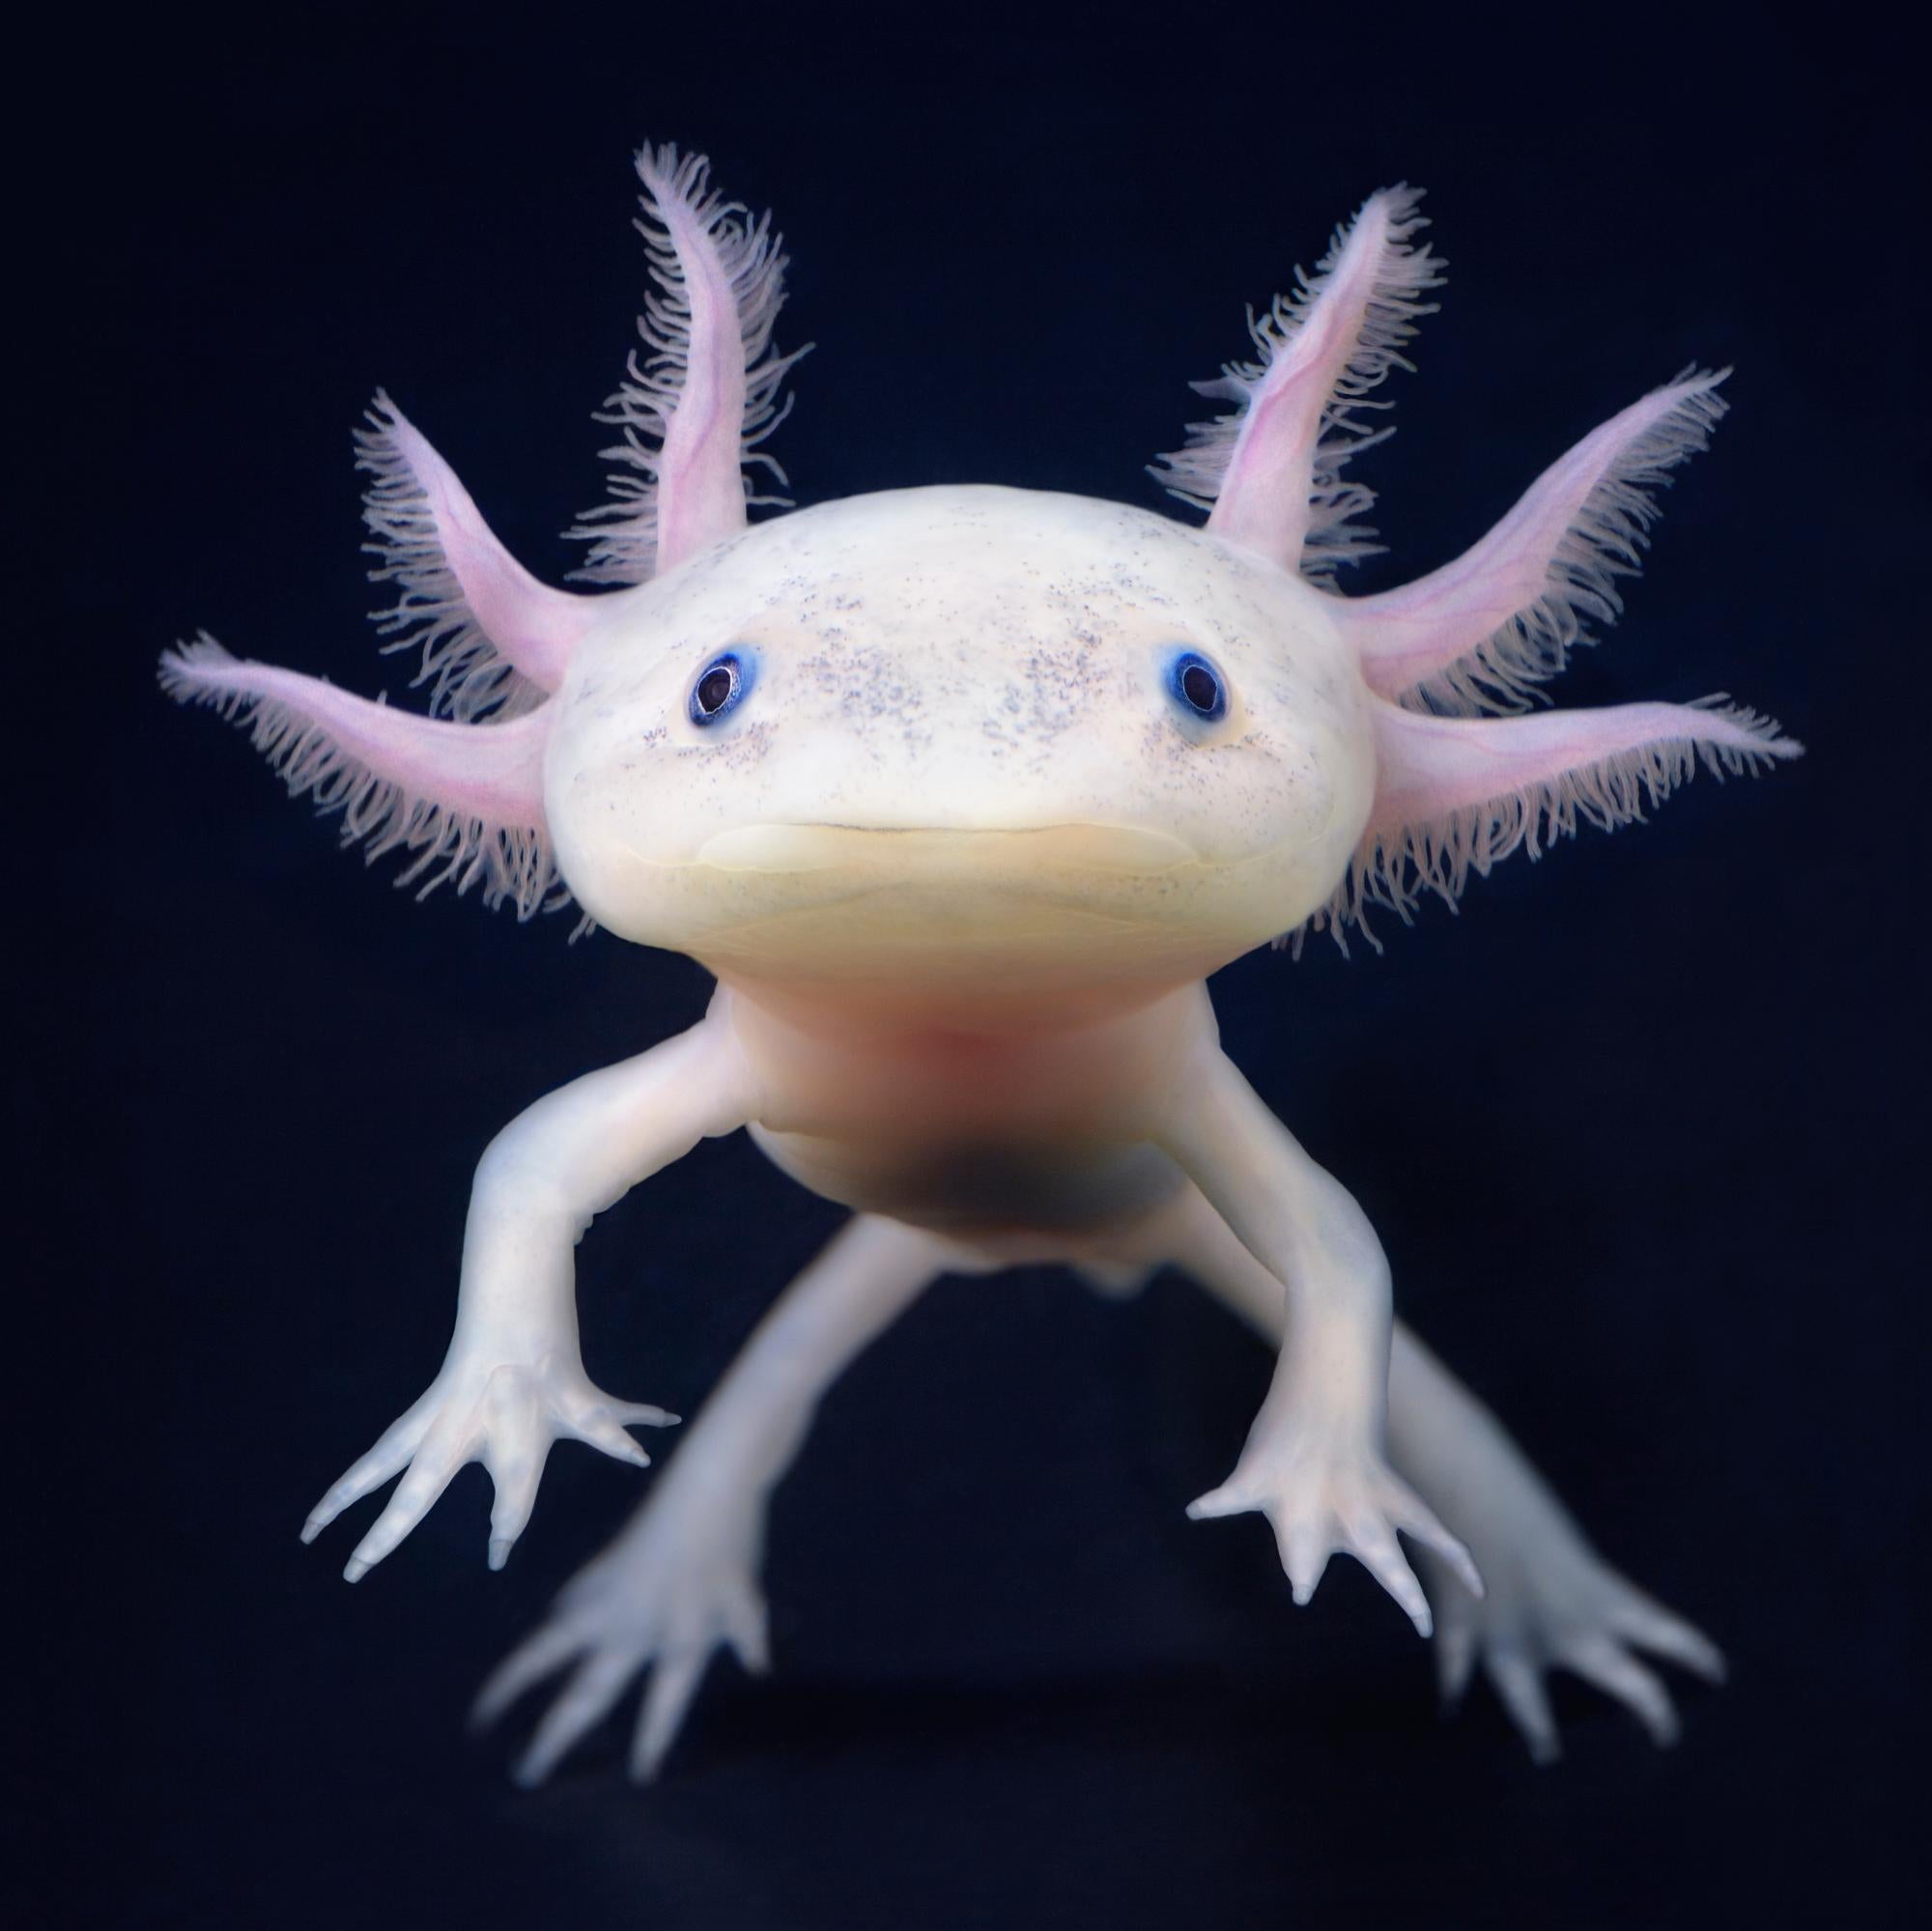 Portrait Photograph Tim Flach - Axolotl - Art britannique contemporain, Photographie animalière, Sous-marin, Poisson marcheur